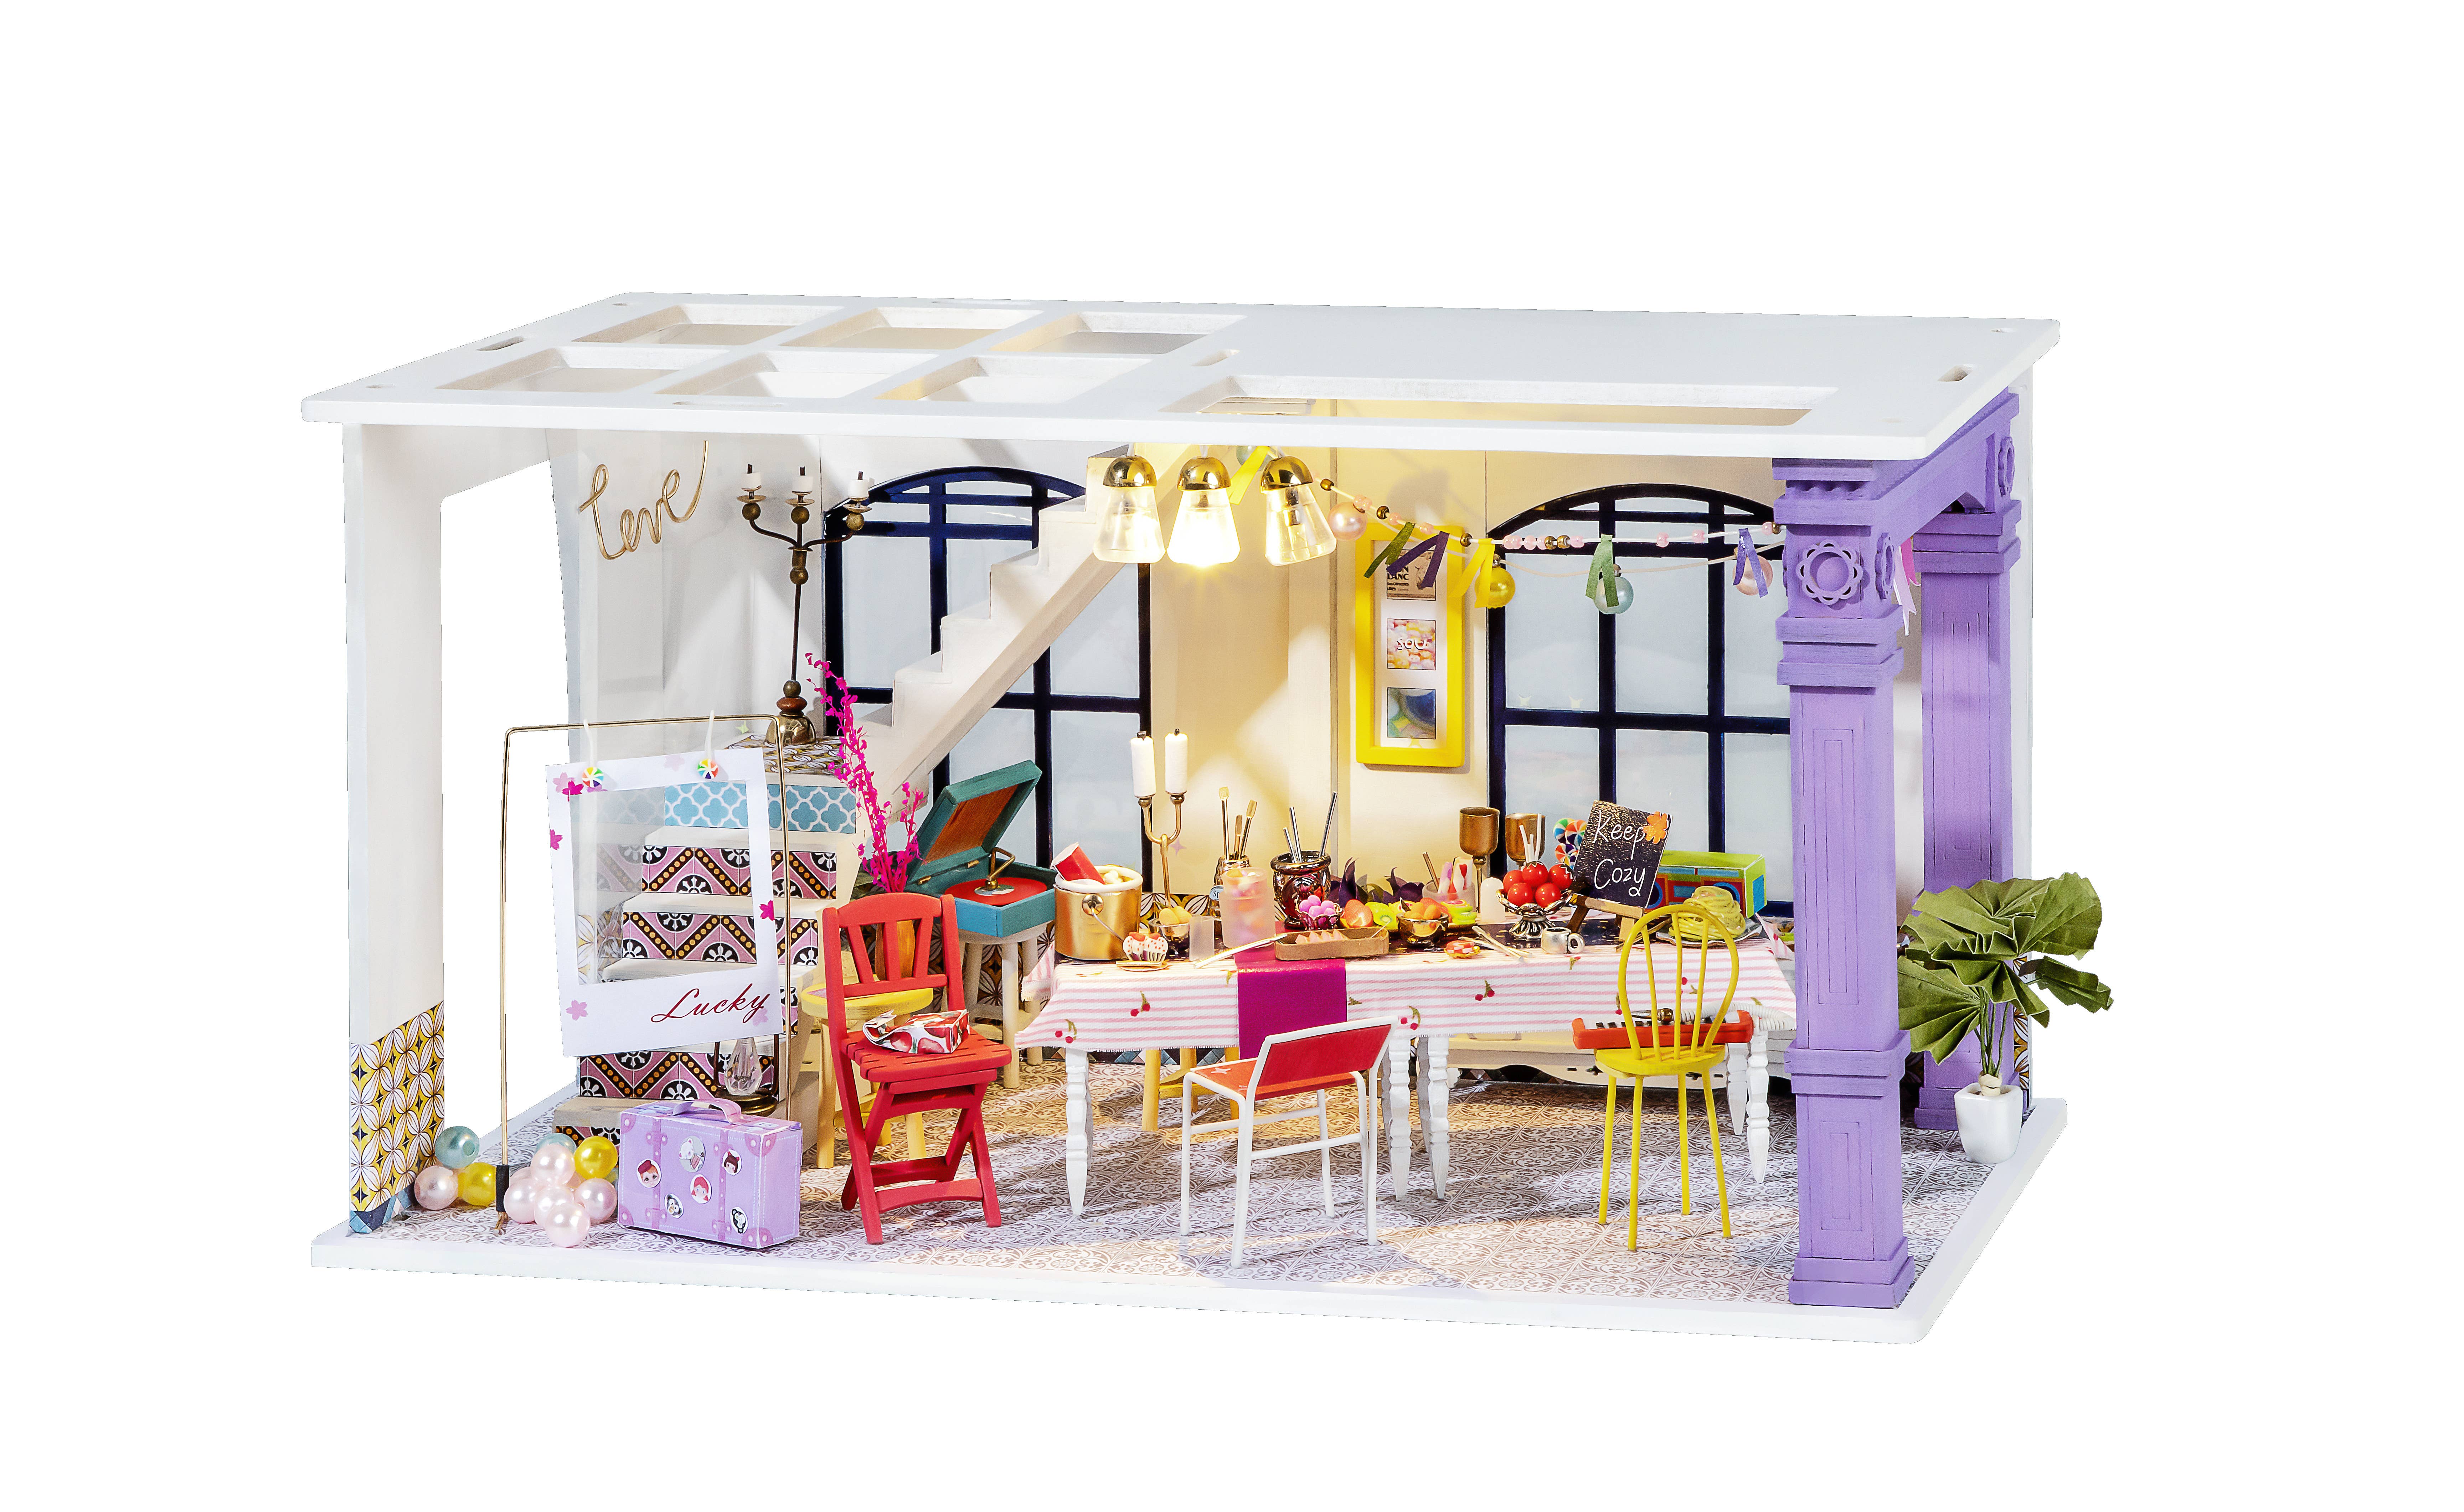 Mostrador de Tienda Pantalla Lápices de Colores Casa De Muñecas Miniaturas 